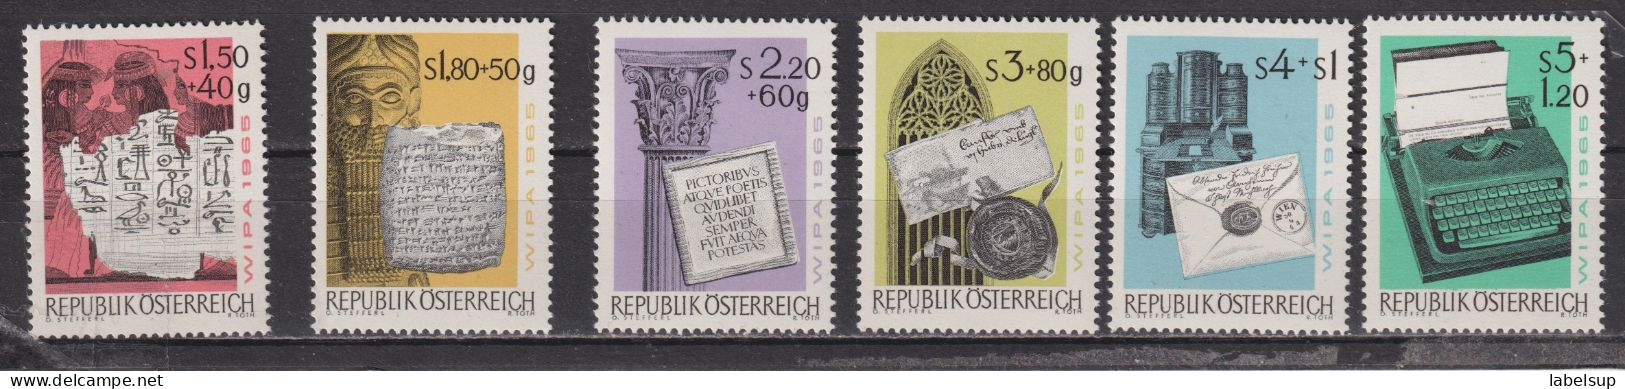 Timbres Neufs** D'Autriche De 1965 YT 1020 à 1025 - Unused Stamps